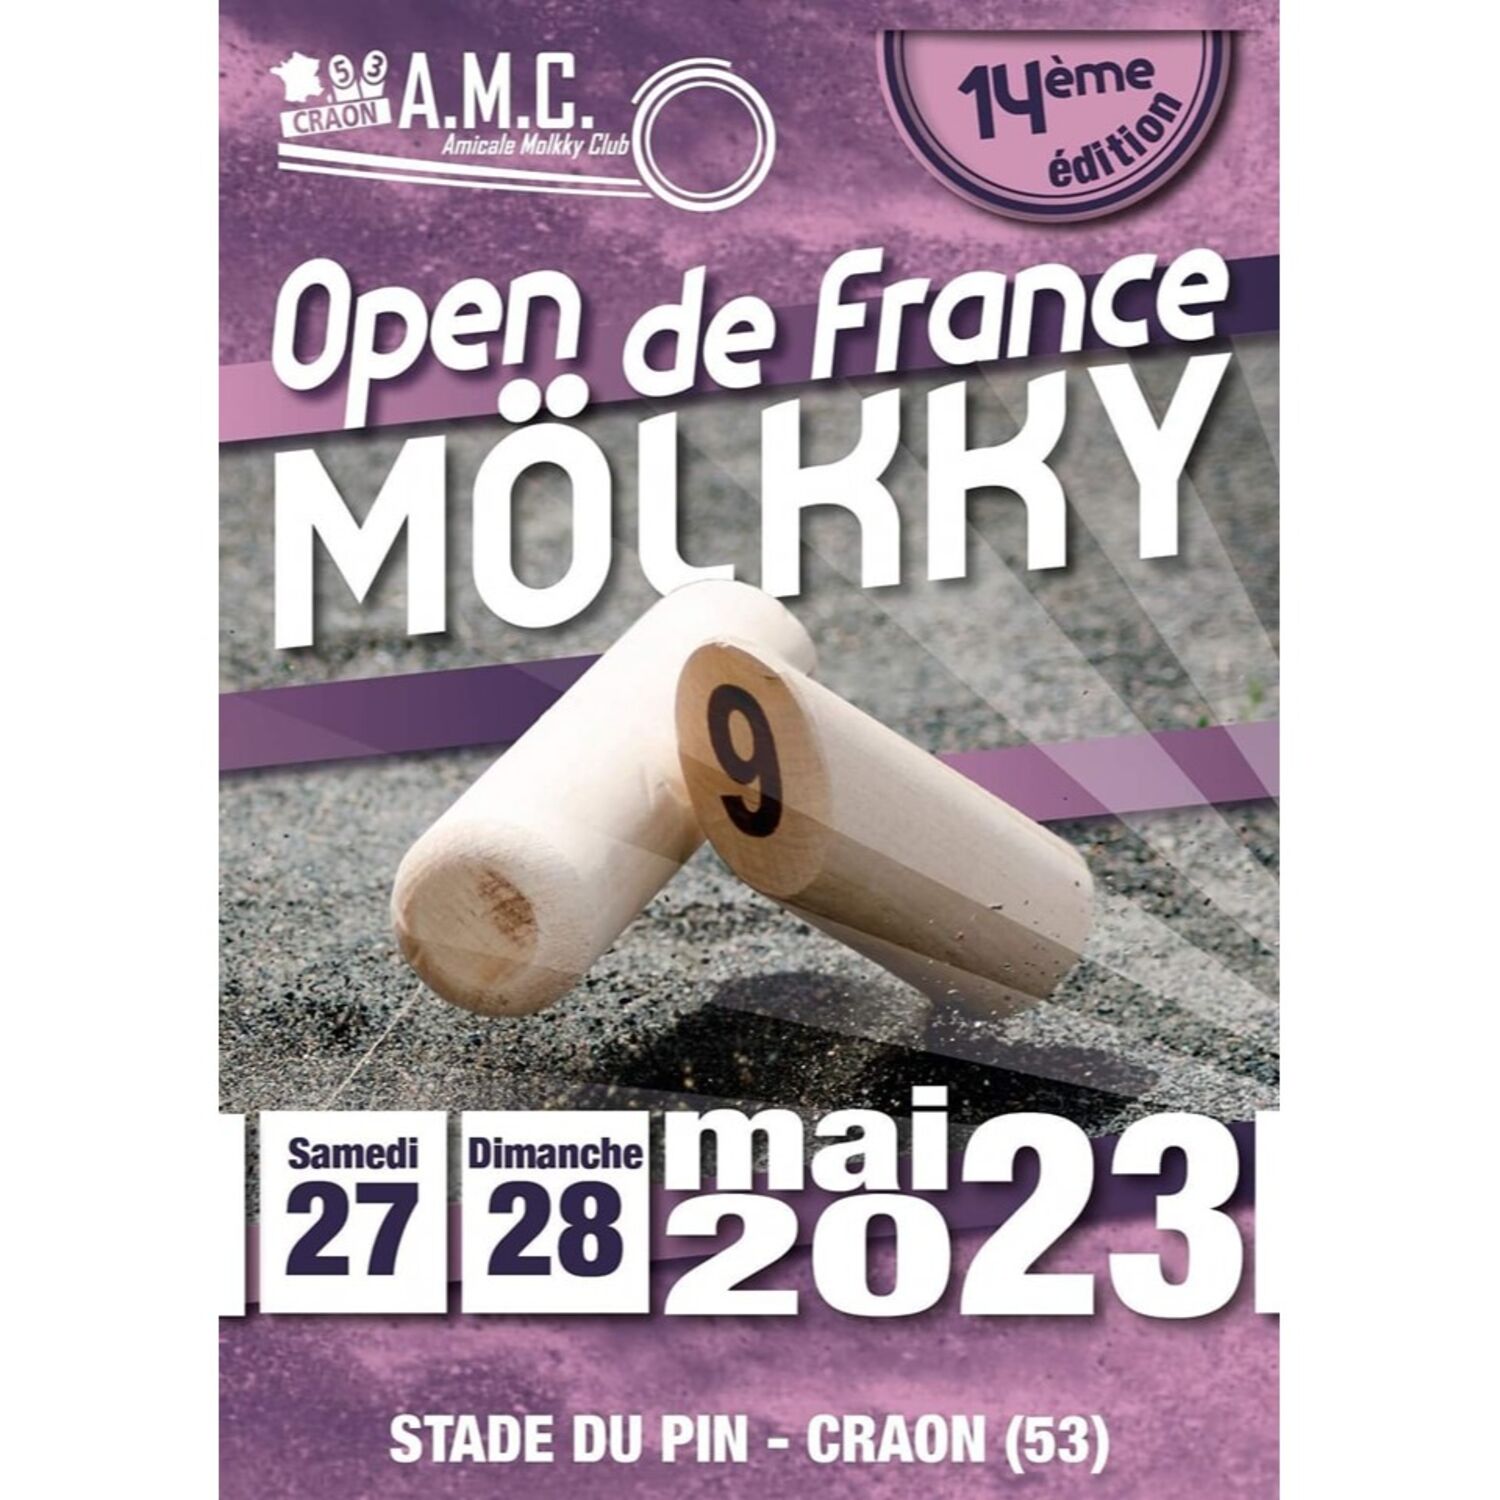 la 14e édition de l’Open de France de Mölkky à Craon